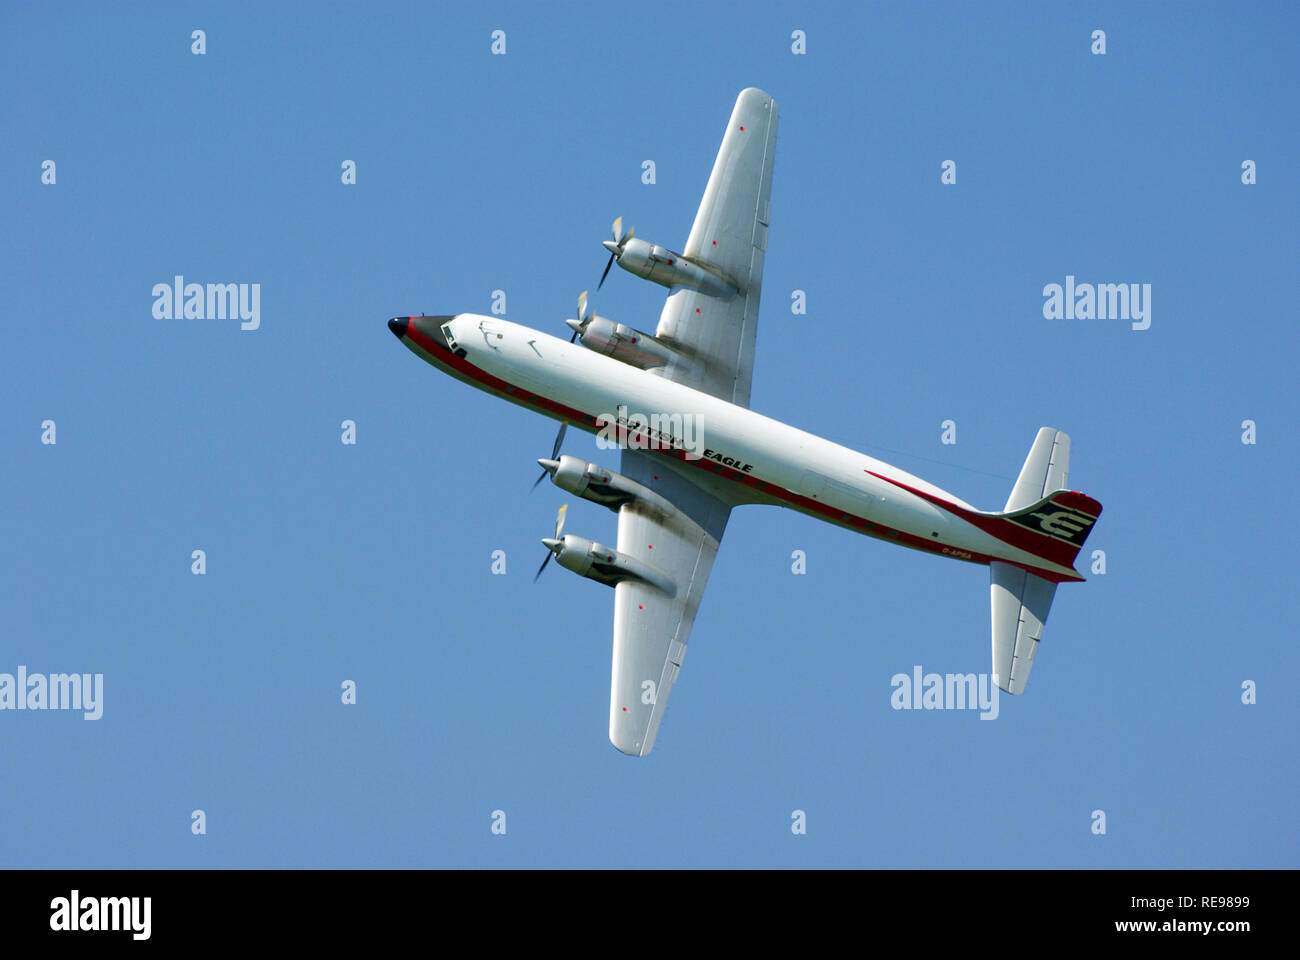 British Eagle Airline Scheme Douglas DC-6 avion de ligne vintage G-APSA volant à un spectacle aérien dans le ciel bleu Banque D'Images